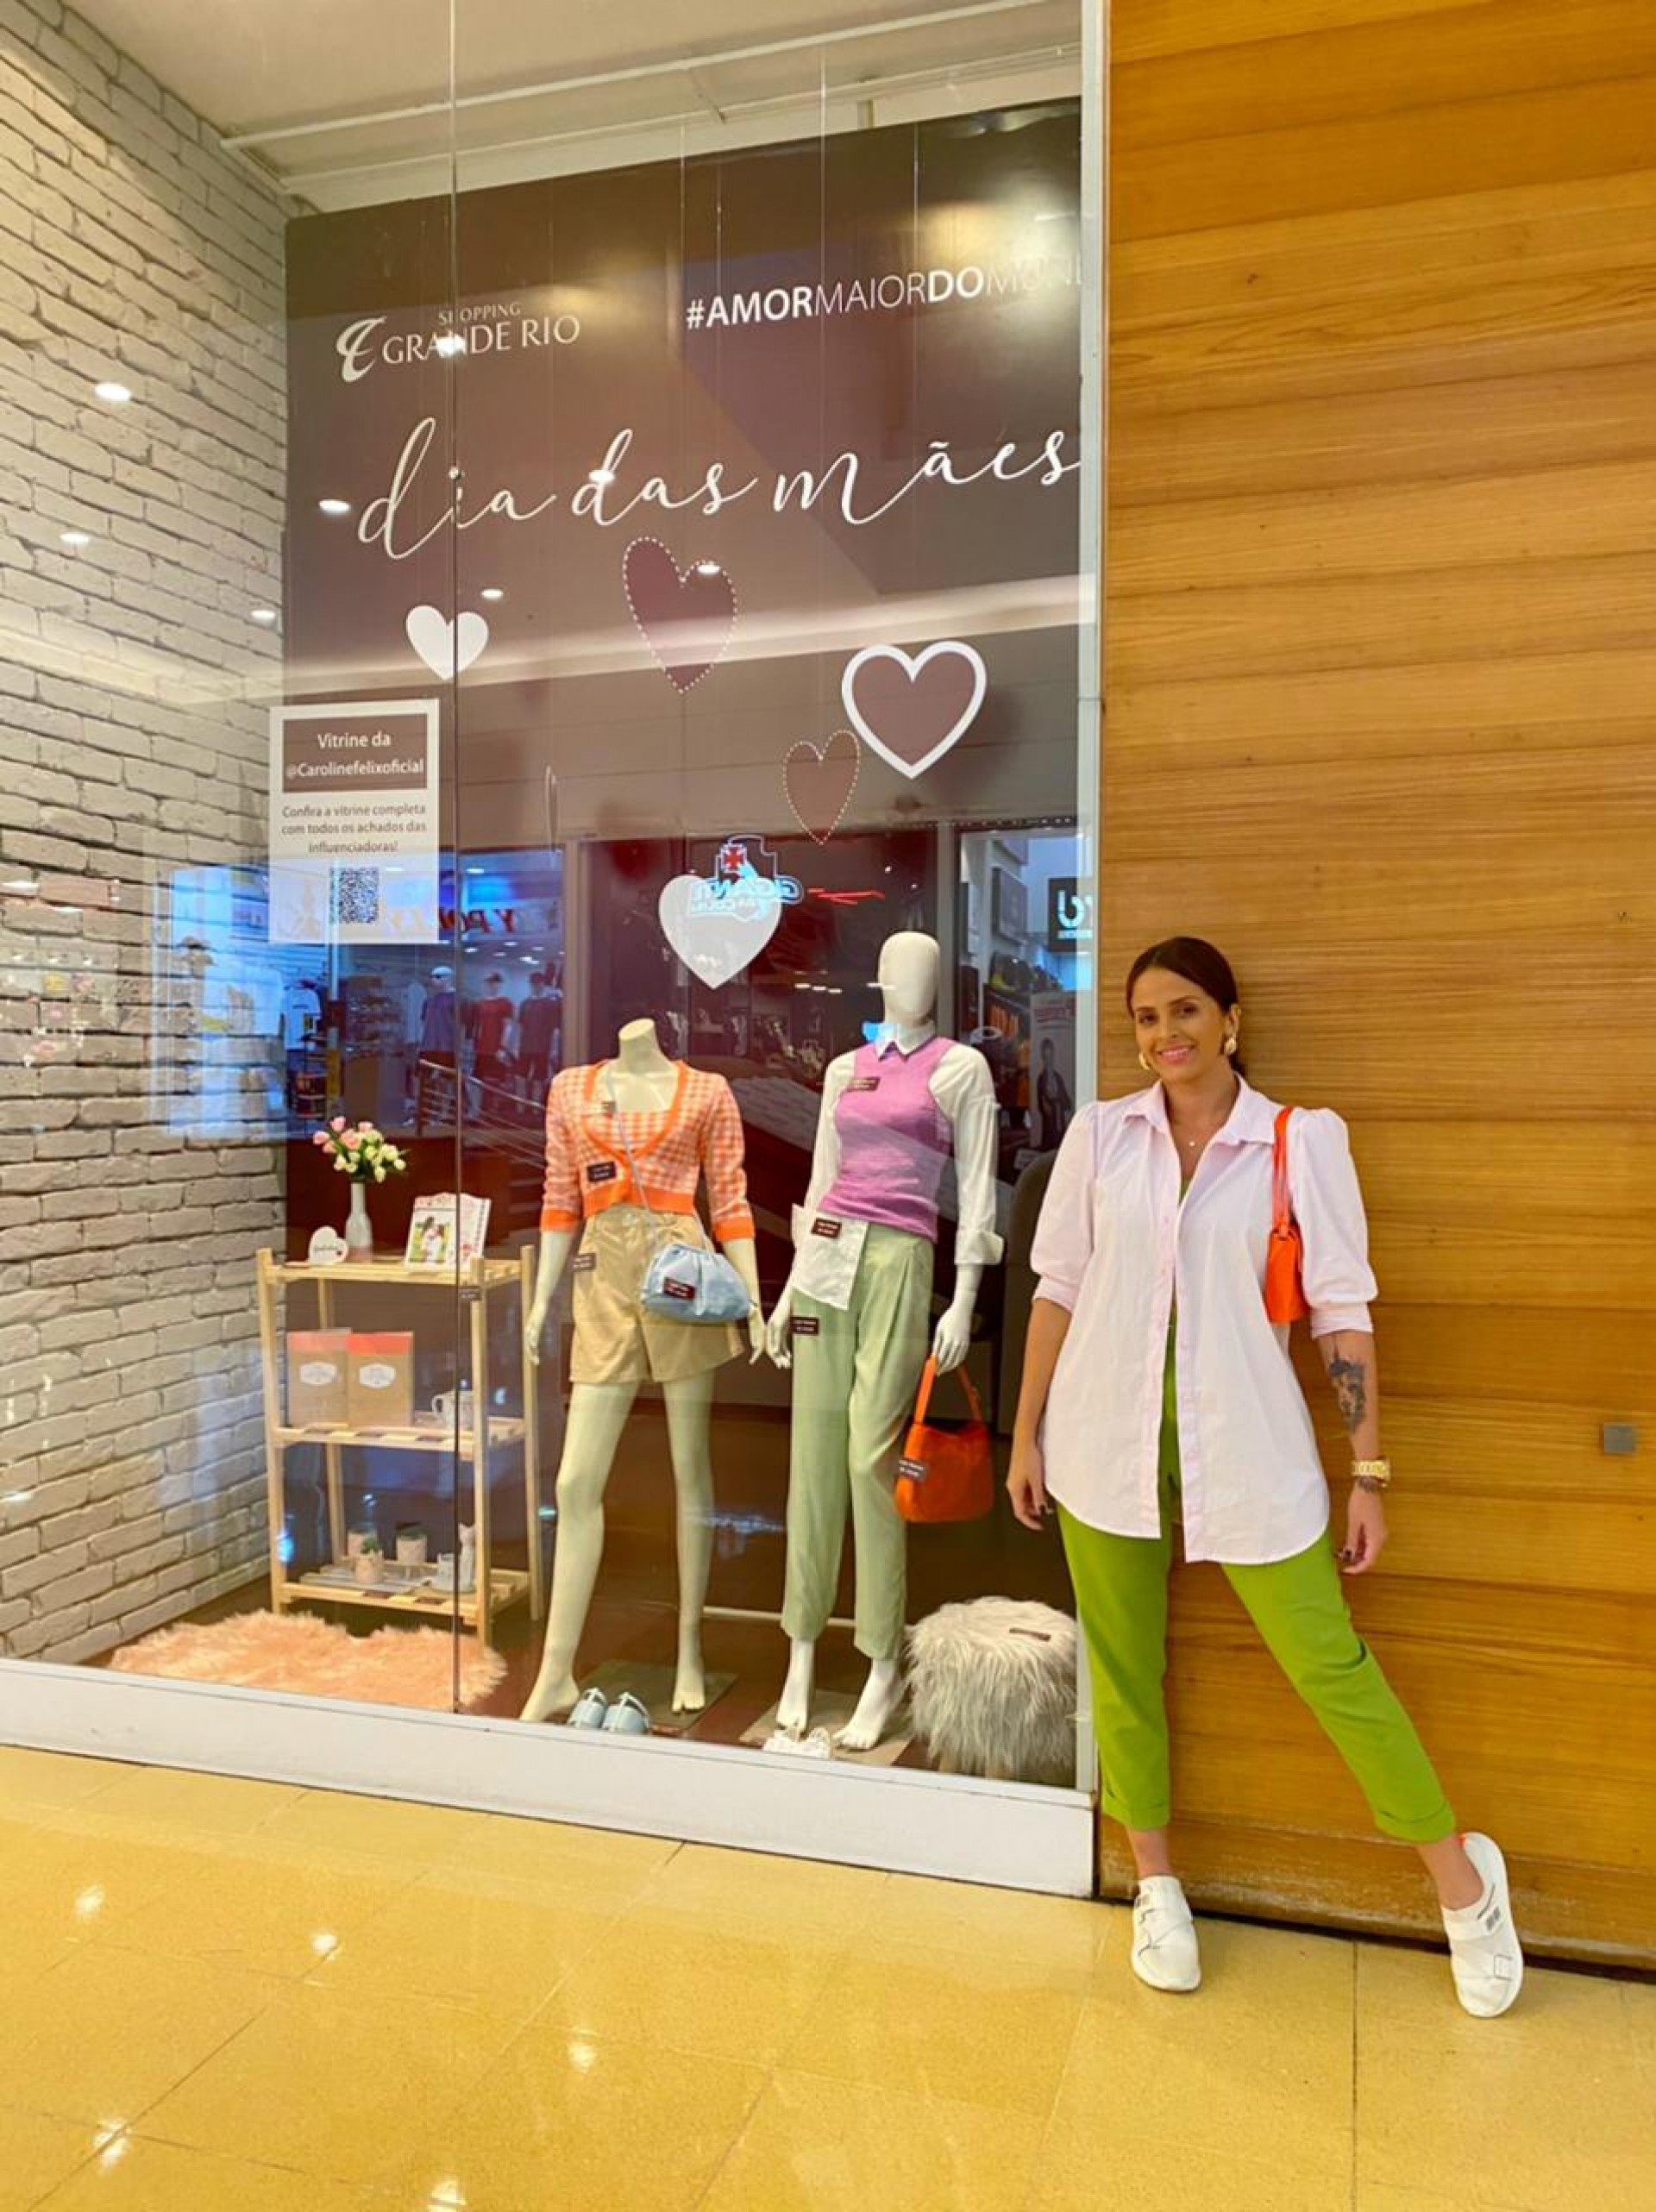 O Shopping Grande Rio disponibiliza uma vitrine virtual de produtos na qual os clientes podem encontrar os melhores presentes para as mães - Divulgação